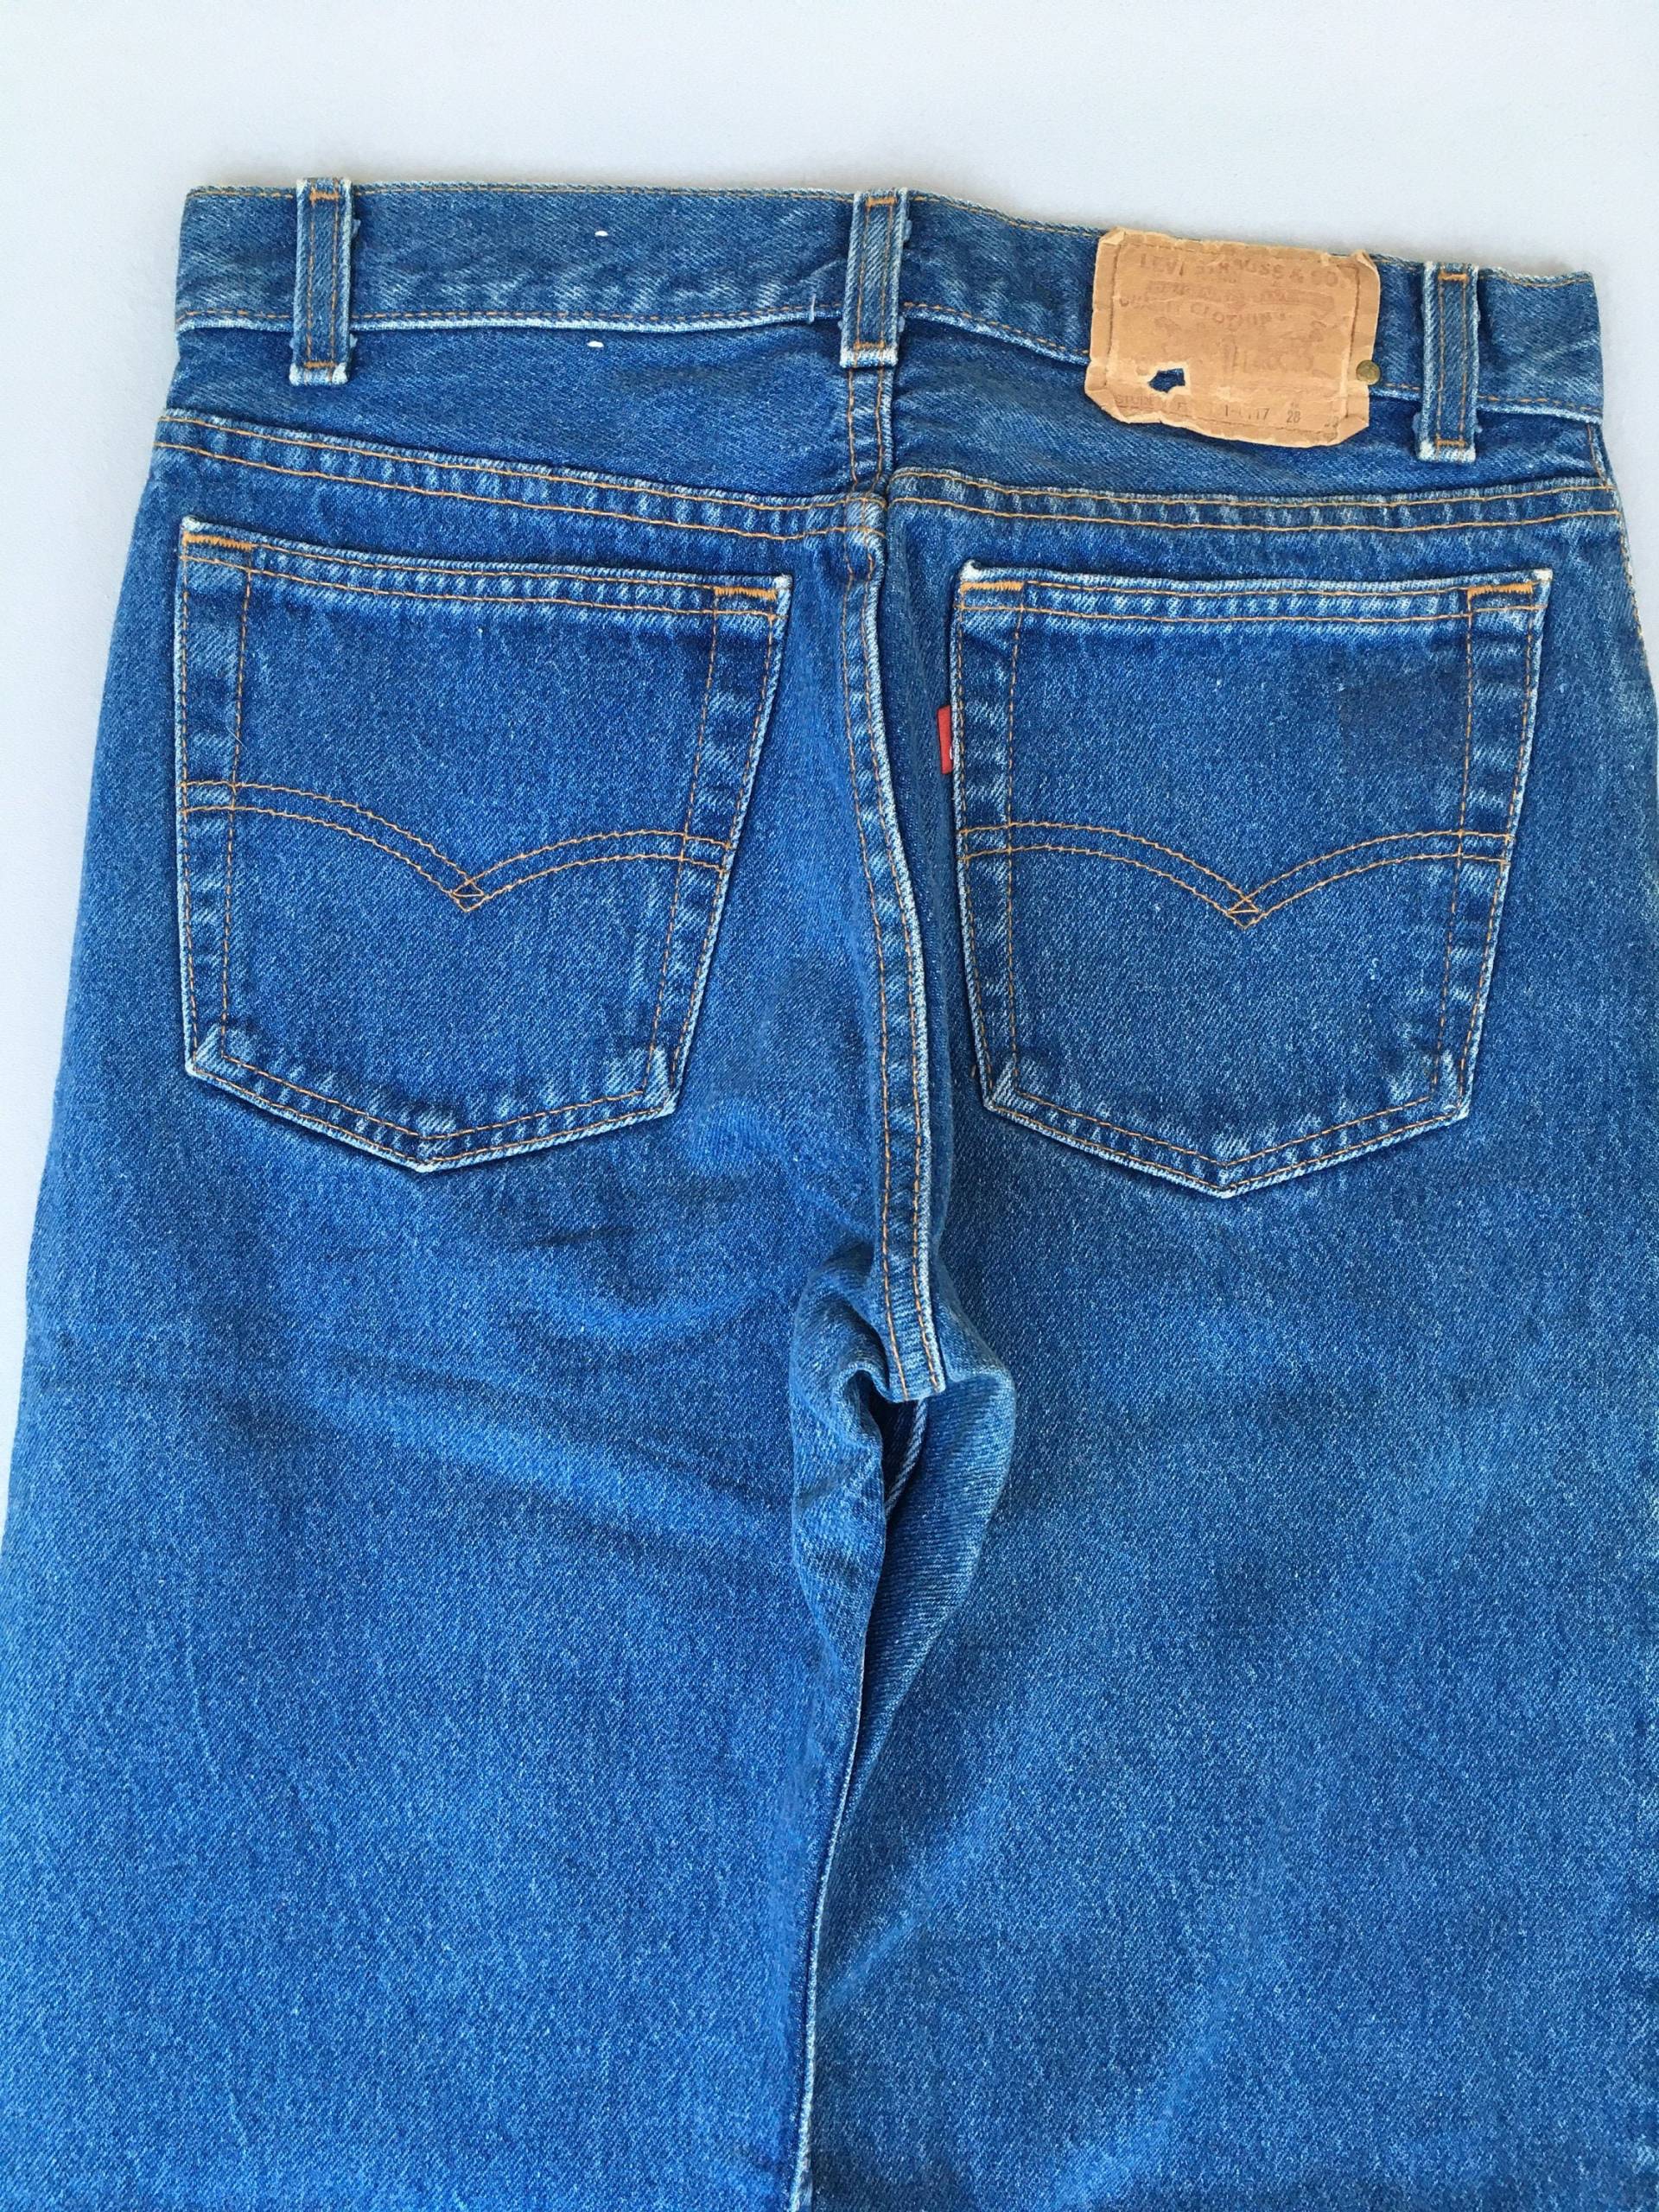 Größe 27x27, 5 Vintage Levis 701 Studenten Jeans Light Washed 1990Er Dirty Denim Distressed Blue 501 Mom W27 von AxeVin